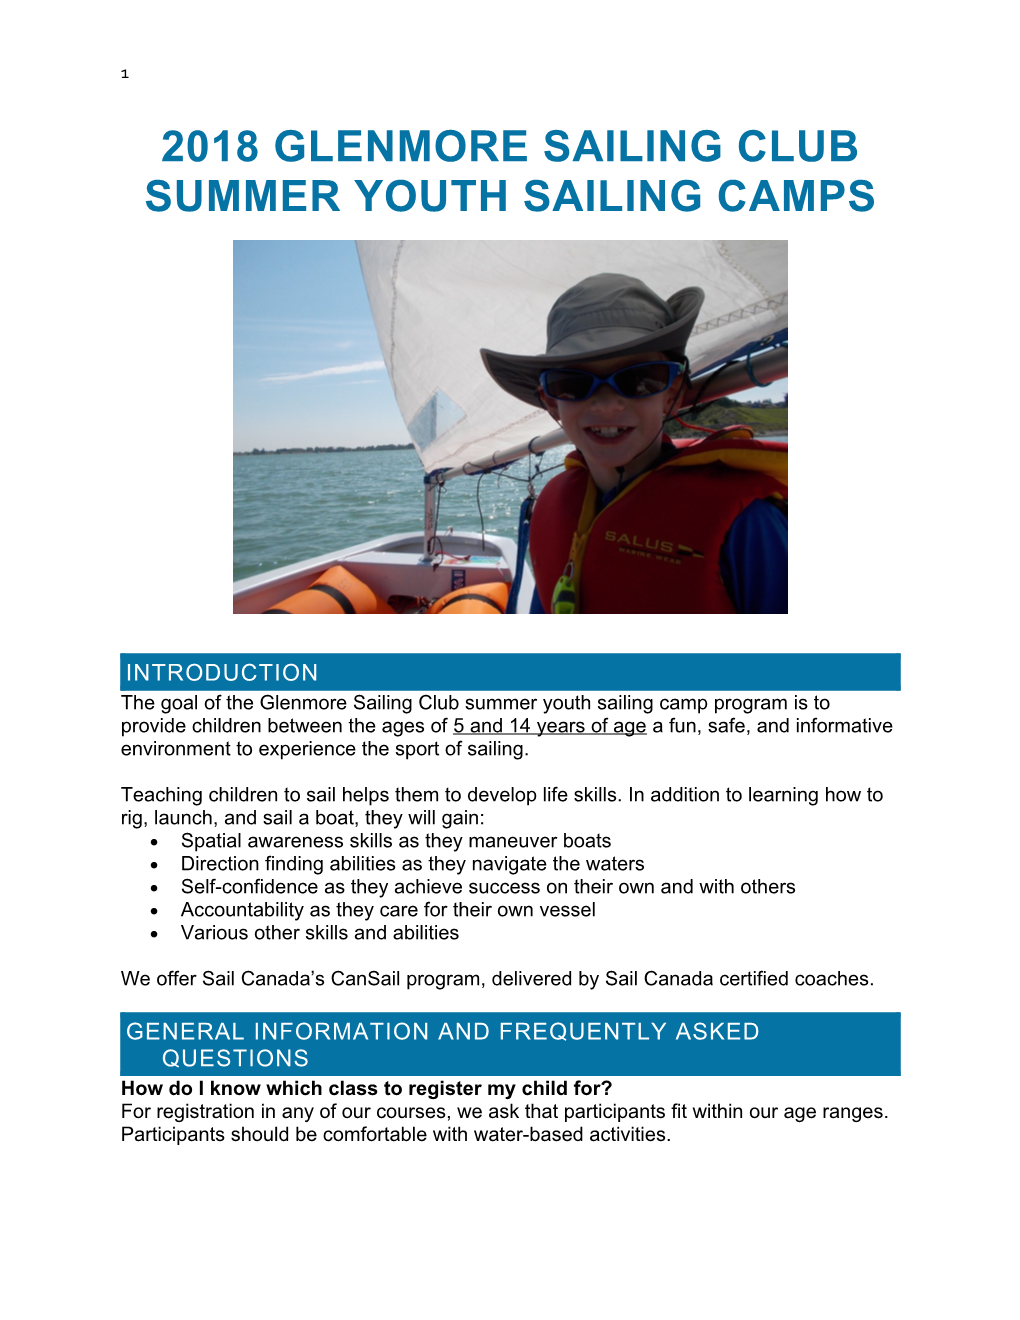 2018 GLENMORE SAILING CLUB Summer Youth Sailing Camps